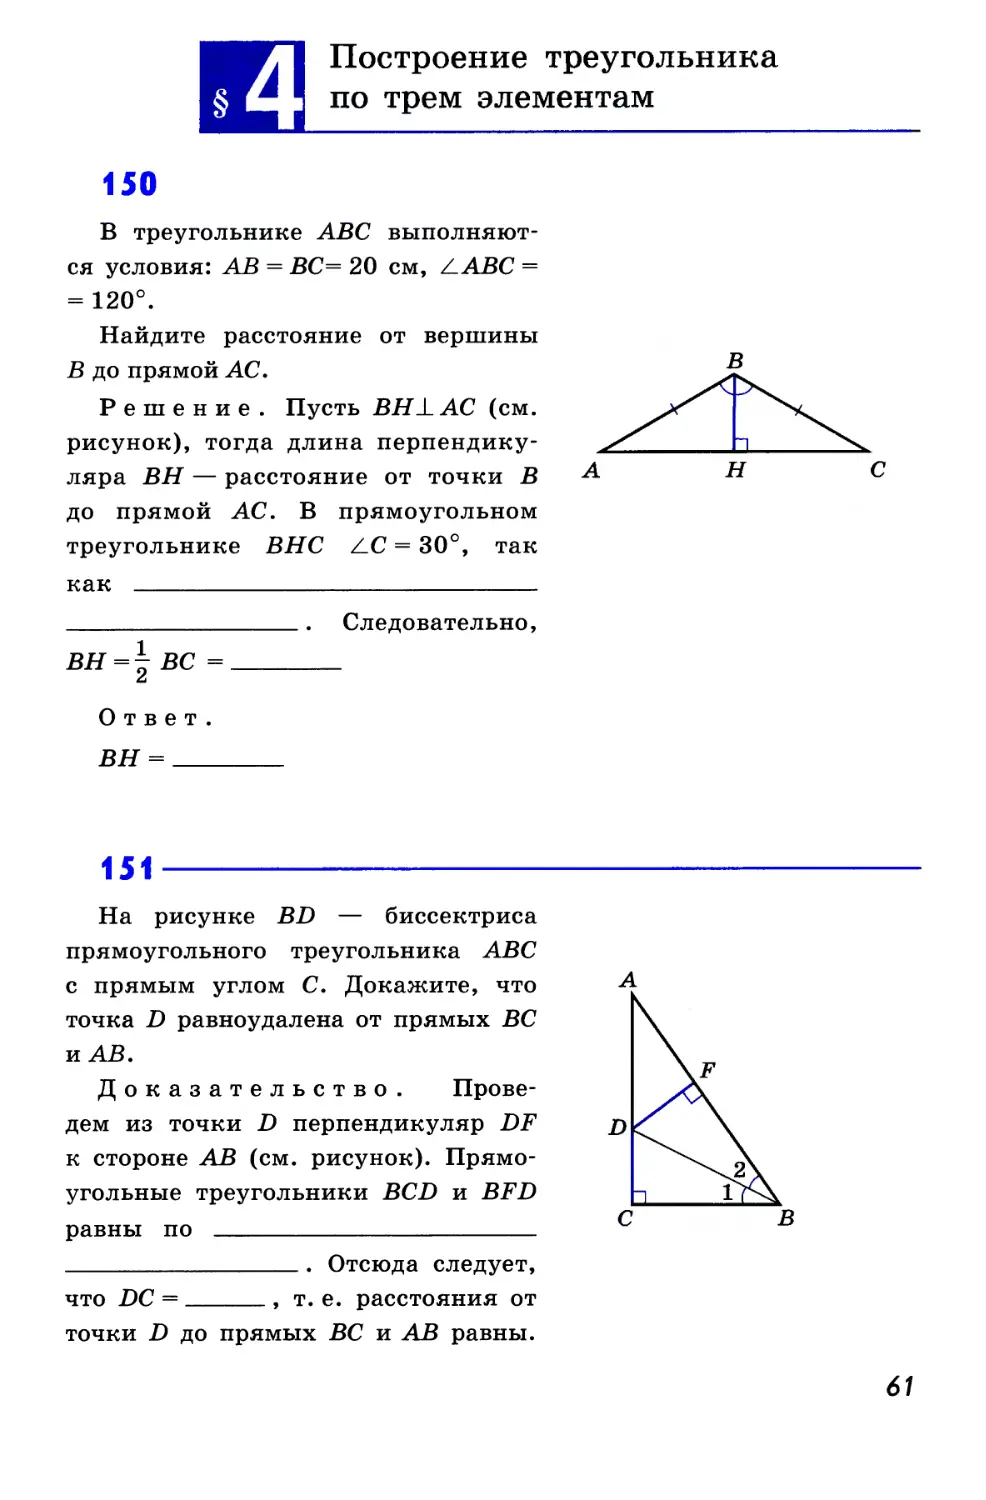 §4. Построение треугольника по трем элементам